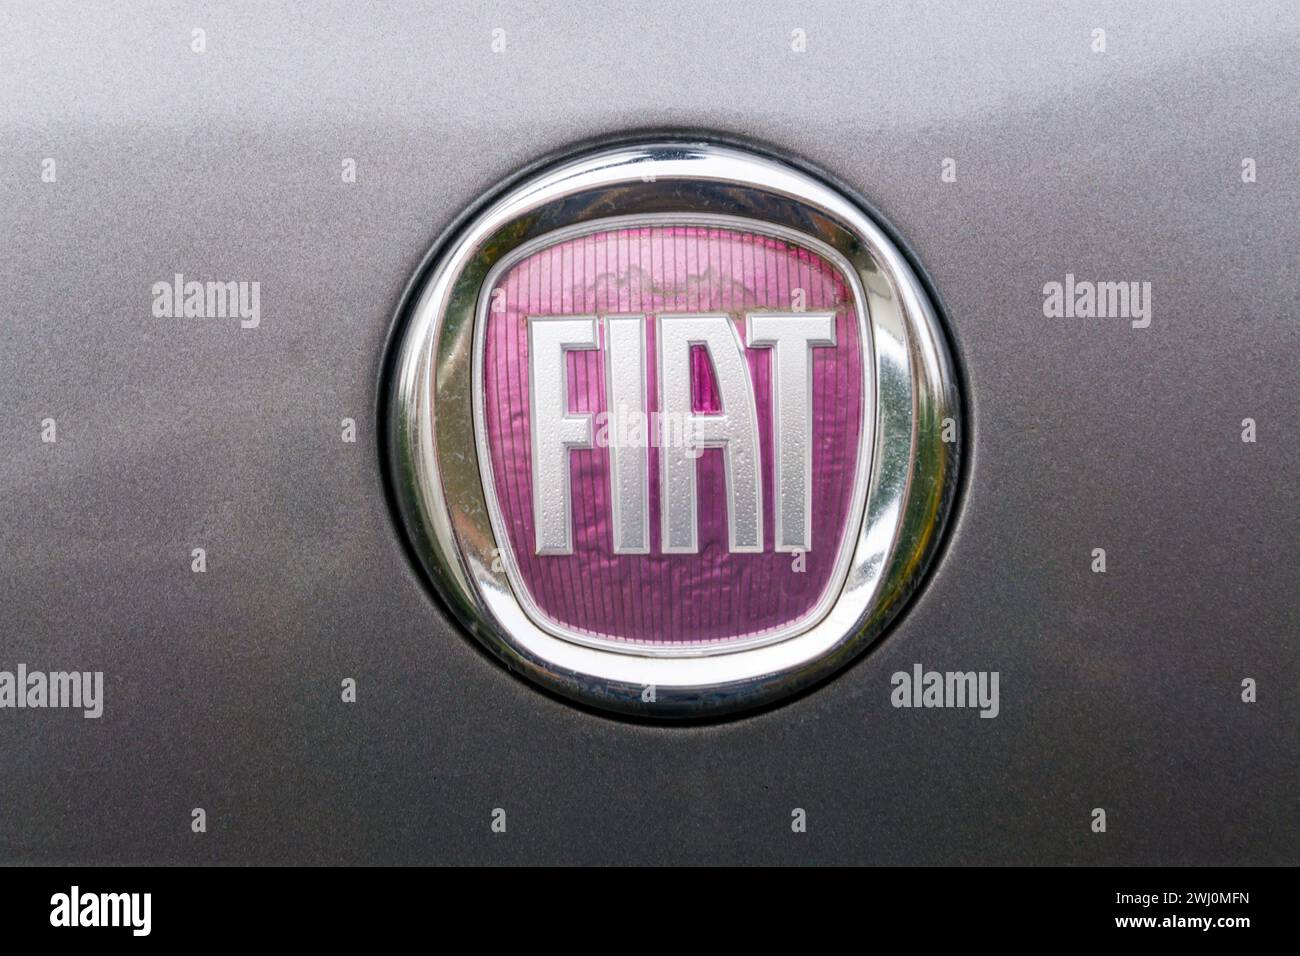 Logo sur une voiture Fiat. Banque D'Images